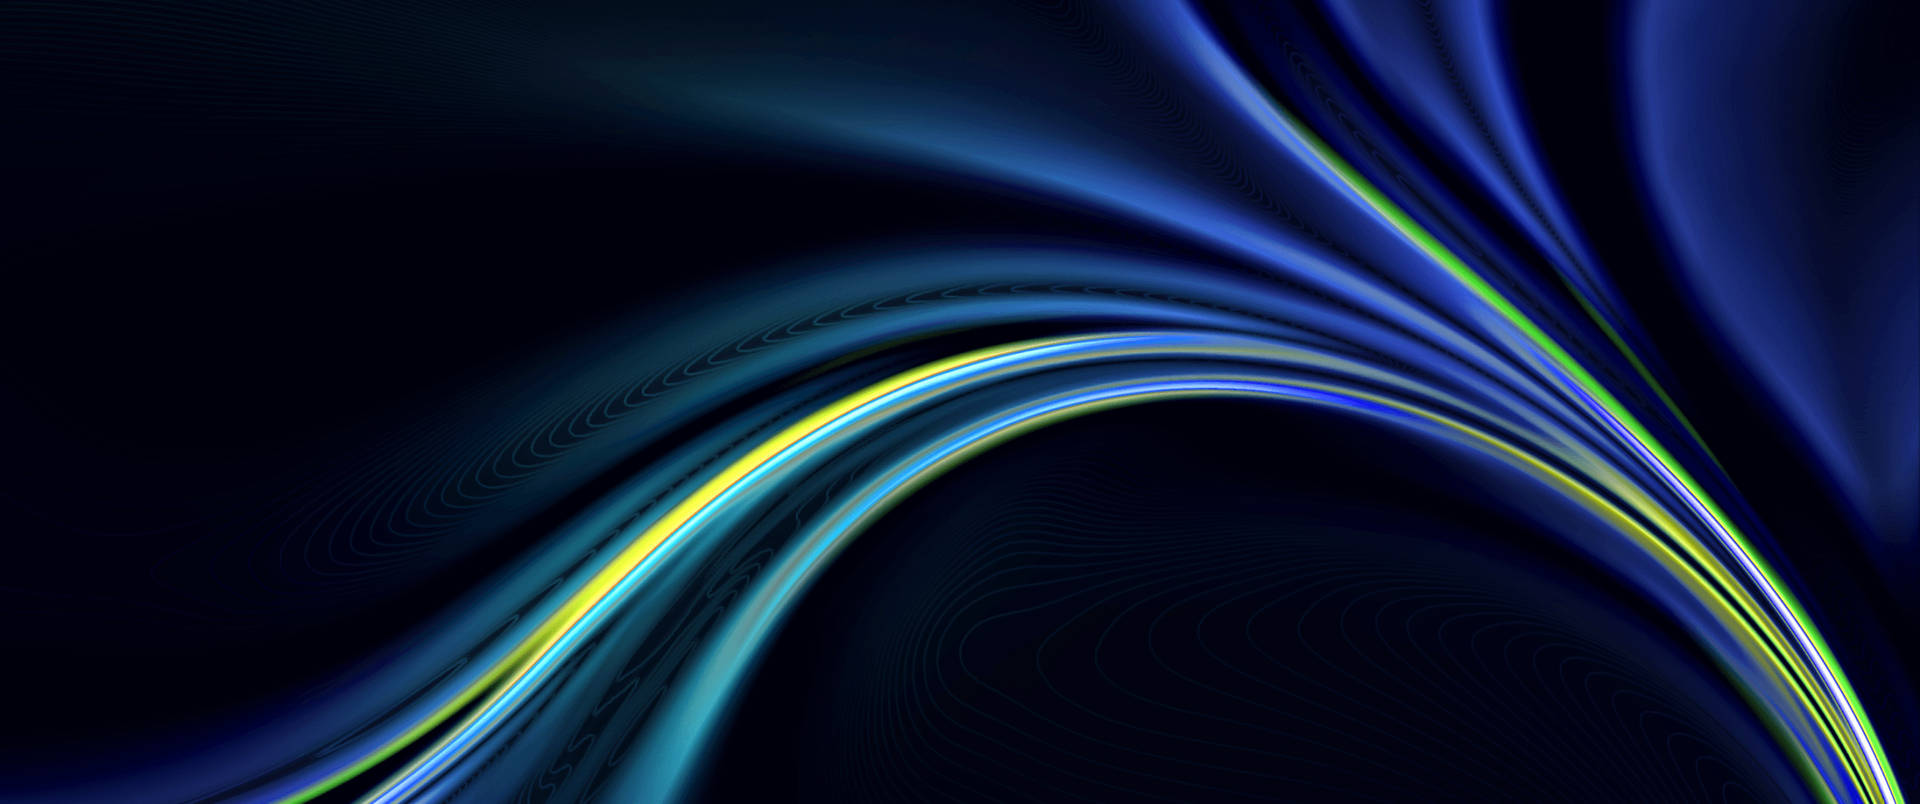 4d Ultra Hd Gradient Blue Light Waves Wallpaper